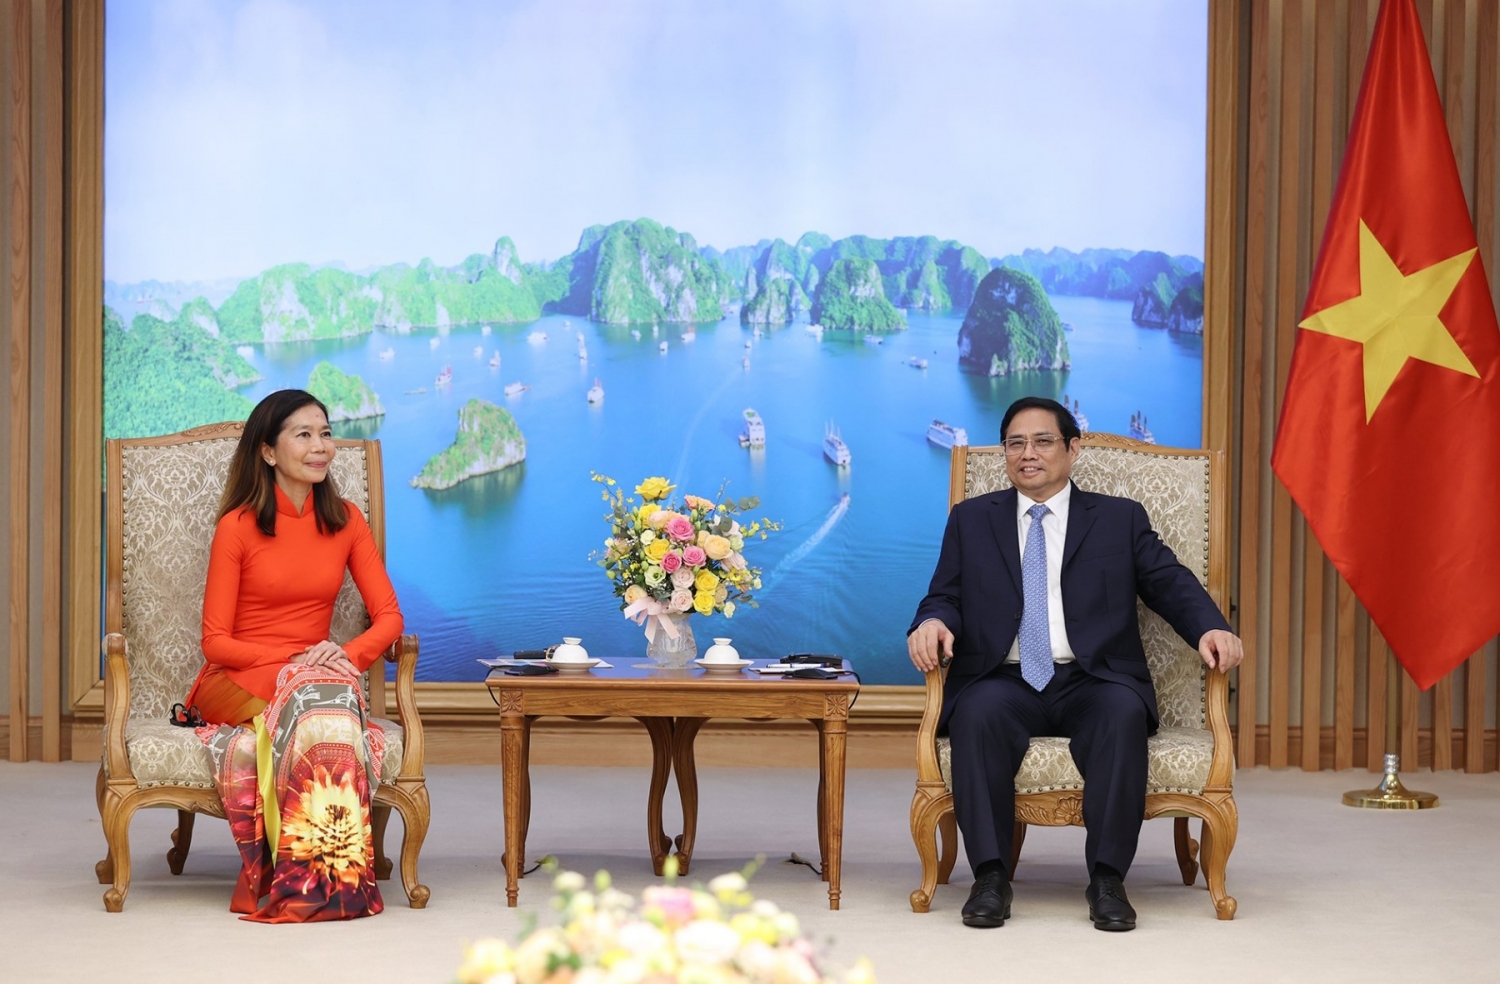 Thủ tướng Phạm Minh Chính tiếp Điều phối viên thường trú Liên hợp quốc trình Quốc thư